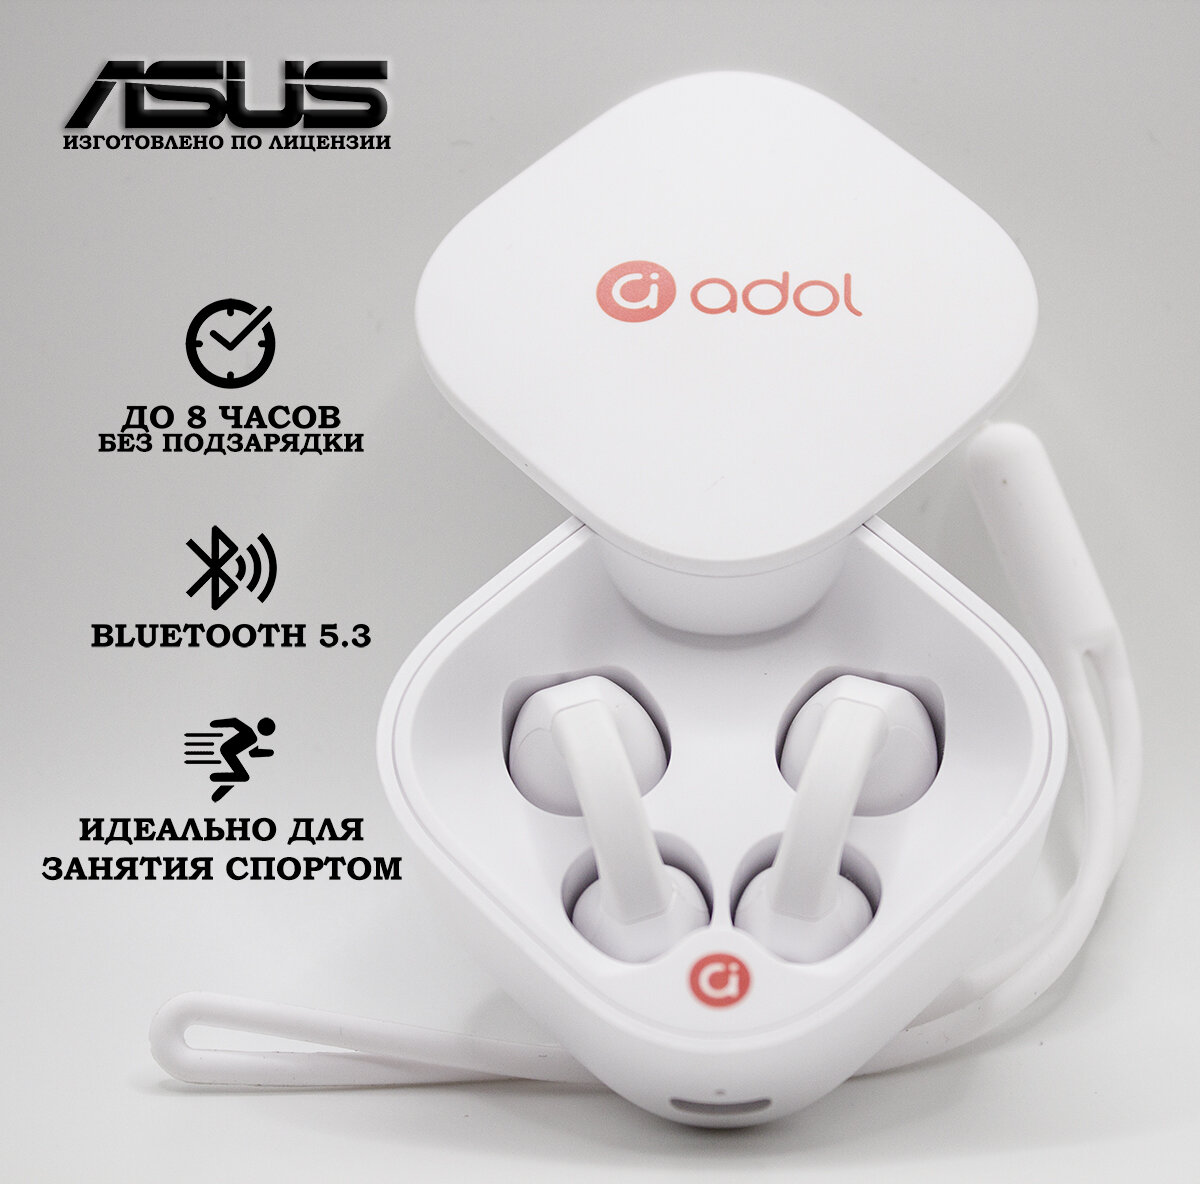 Беспроводные наушники сенсорные с микрофоном Asus Adol AS HG